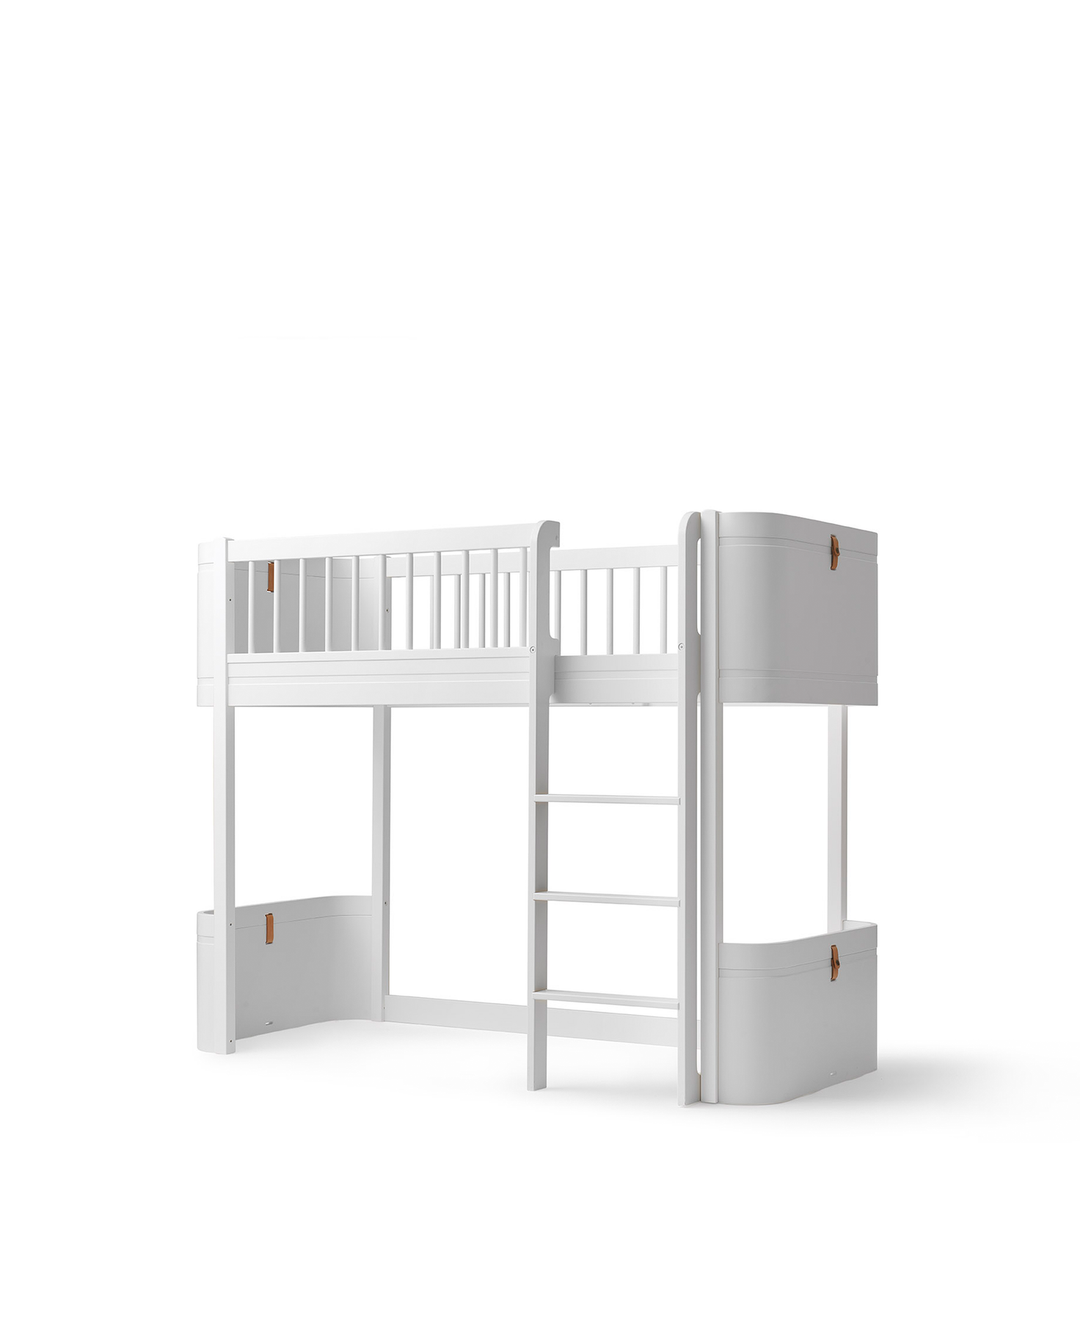 Oliver Furniture conversieset transformeert een Mini+ Basic Bed in een wit Mini+ Low Loft Bed, ideaal voor creatieve speelruimte.